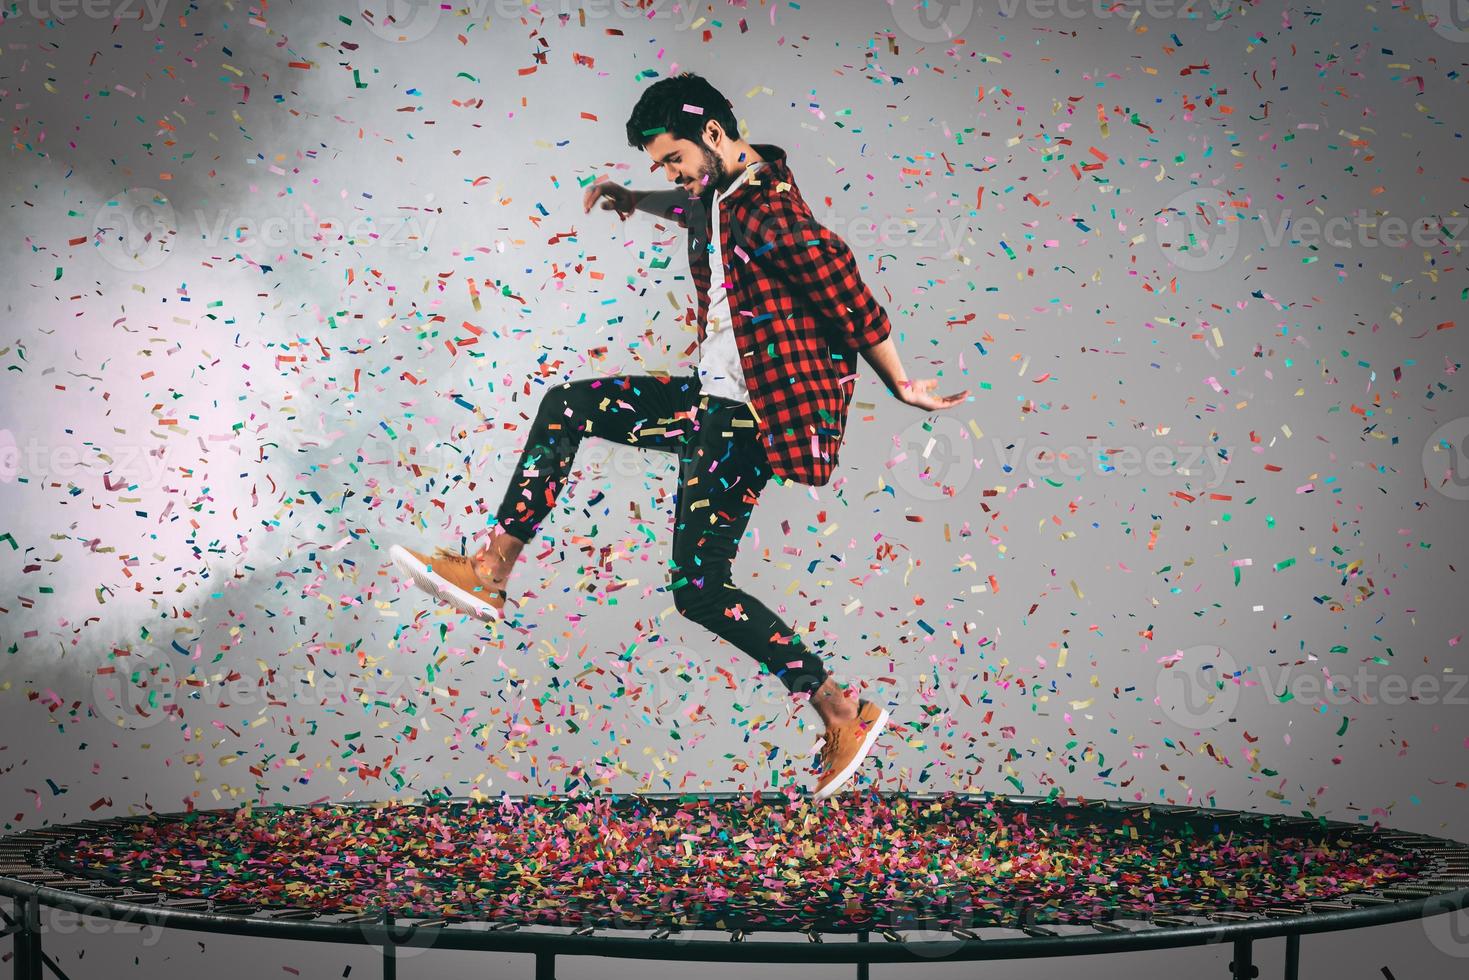 plaisir du trampoline. tir en l'air d'un beau jeune homme sautant sur un trampoline avec des confettis tout autour de lui photo